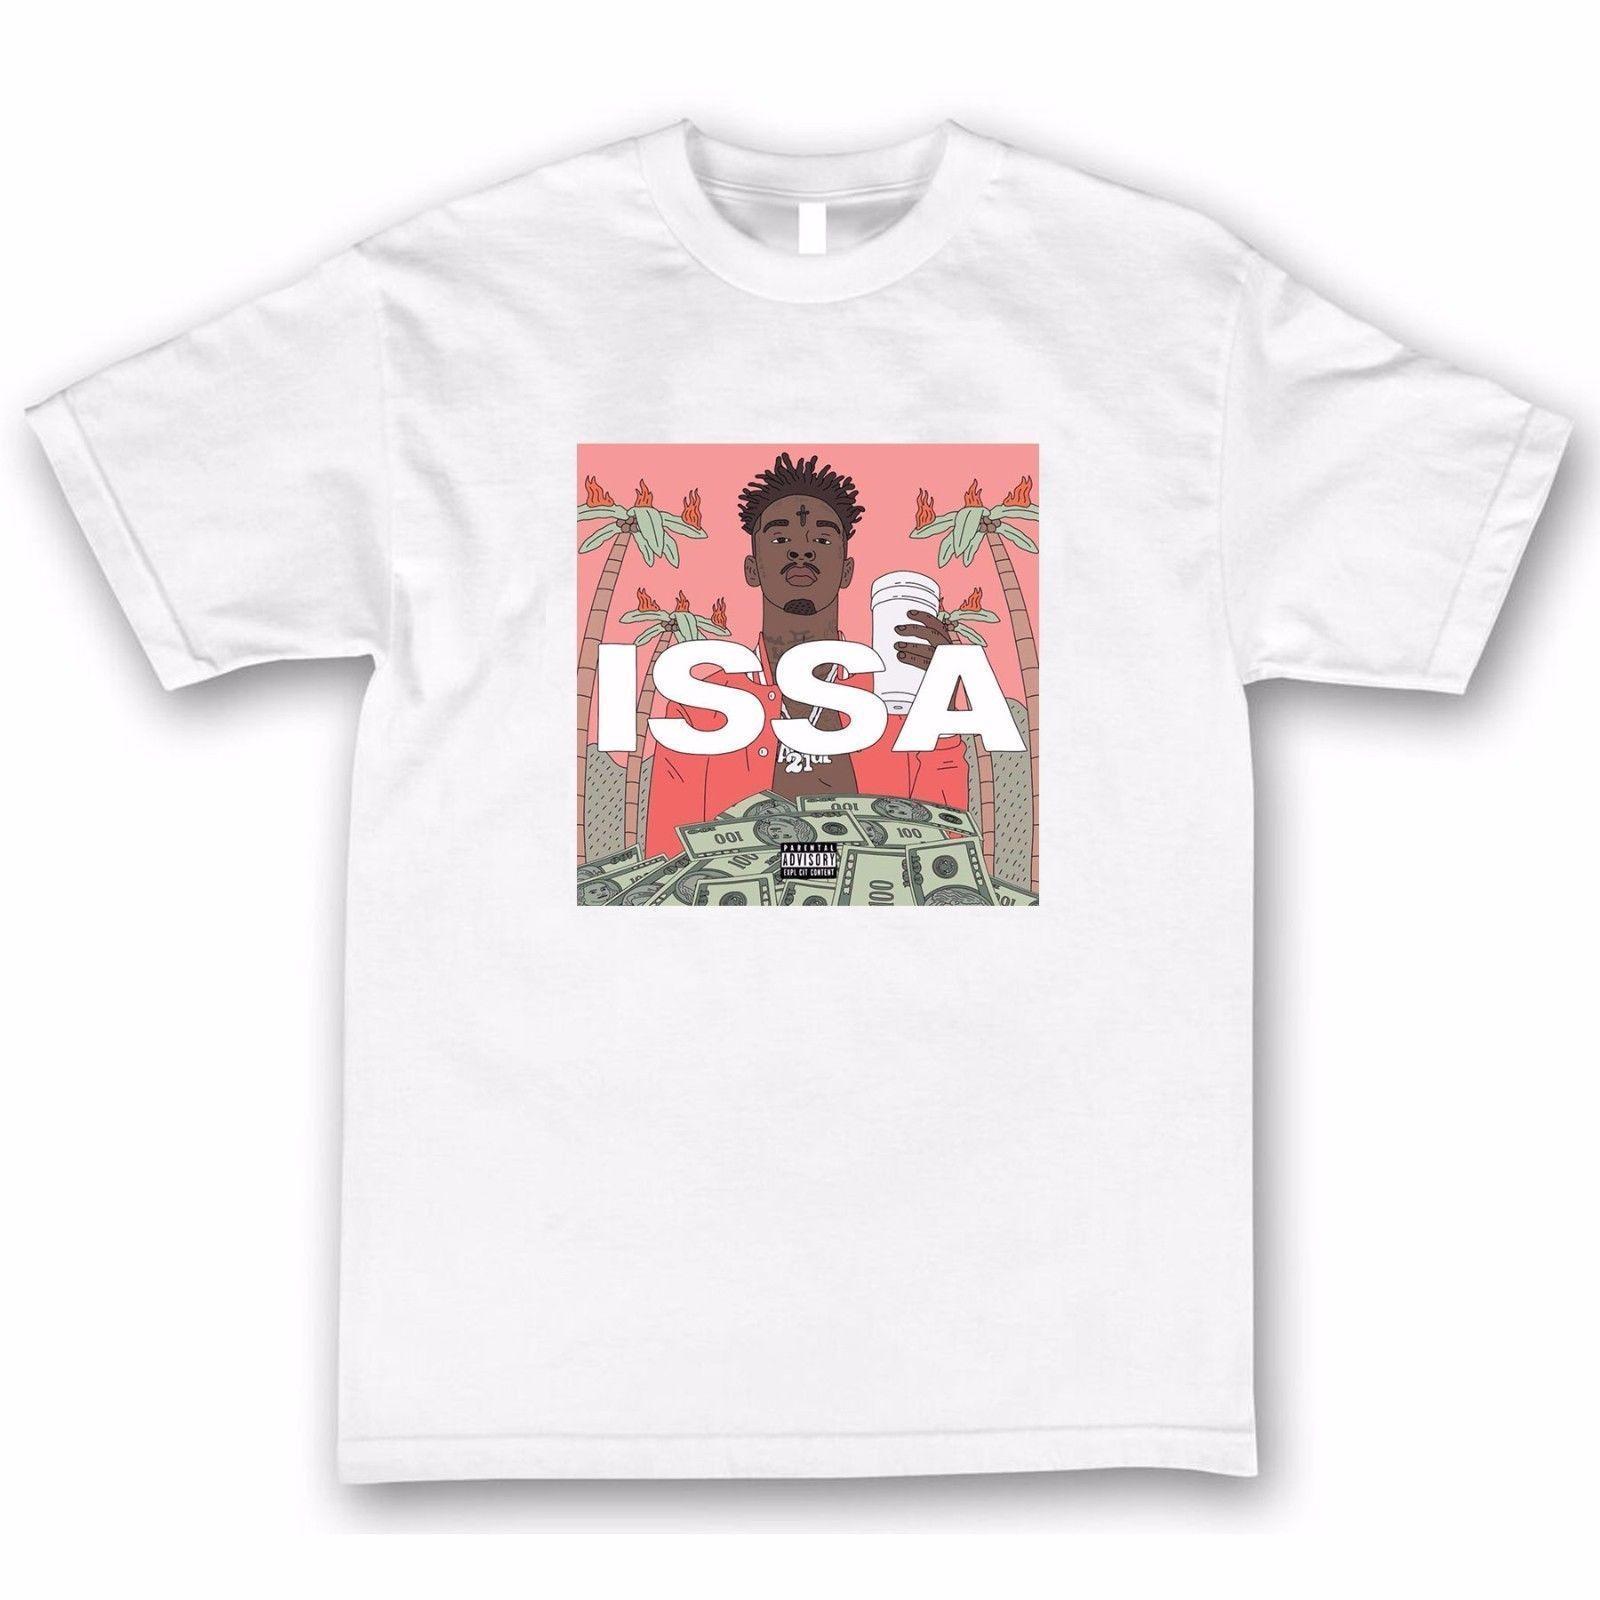 Issa 21 Savage Logo - 21 Savage Issa Album T Shirt Online with $12.99/Piece on ...